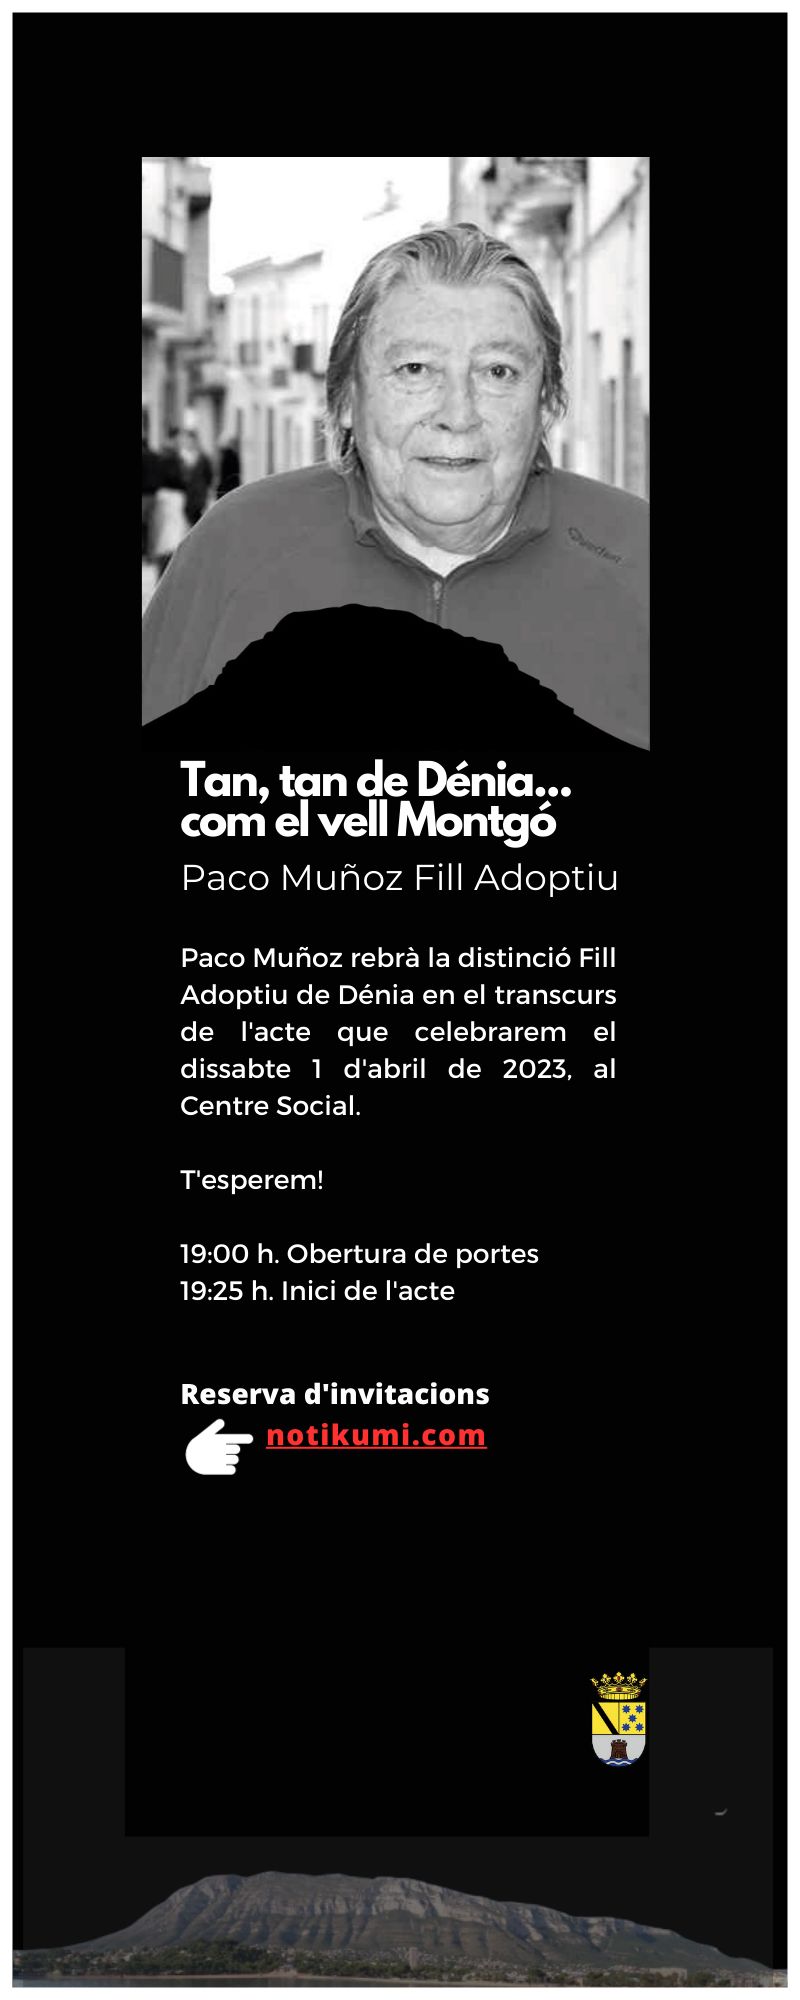 El acto de nombramiento como hijo adoptivo de Dénia de Paco Muñoz se celebrará el 1 de abril